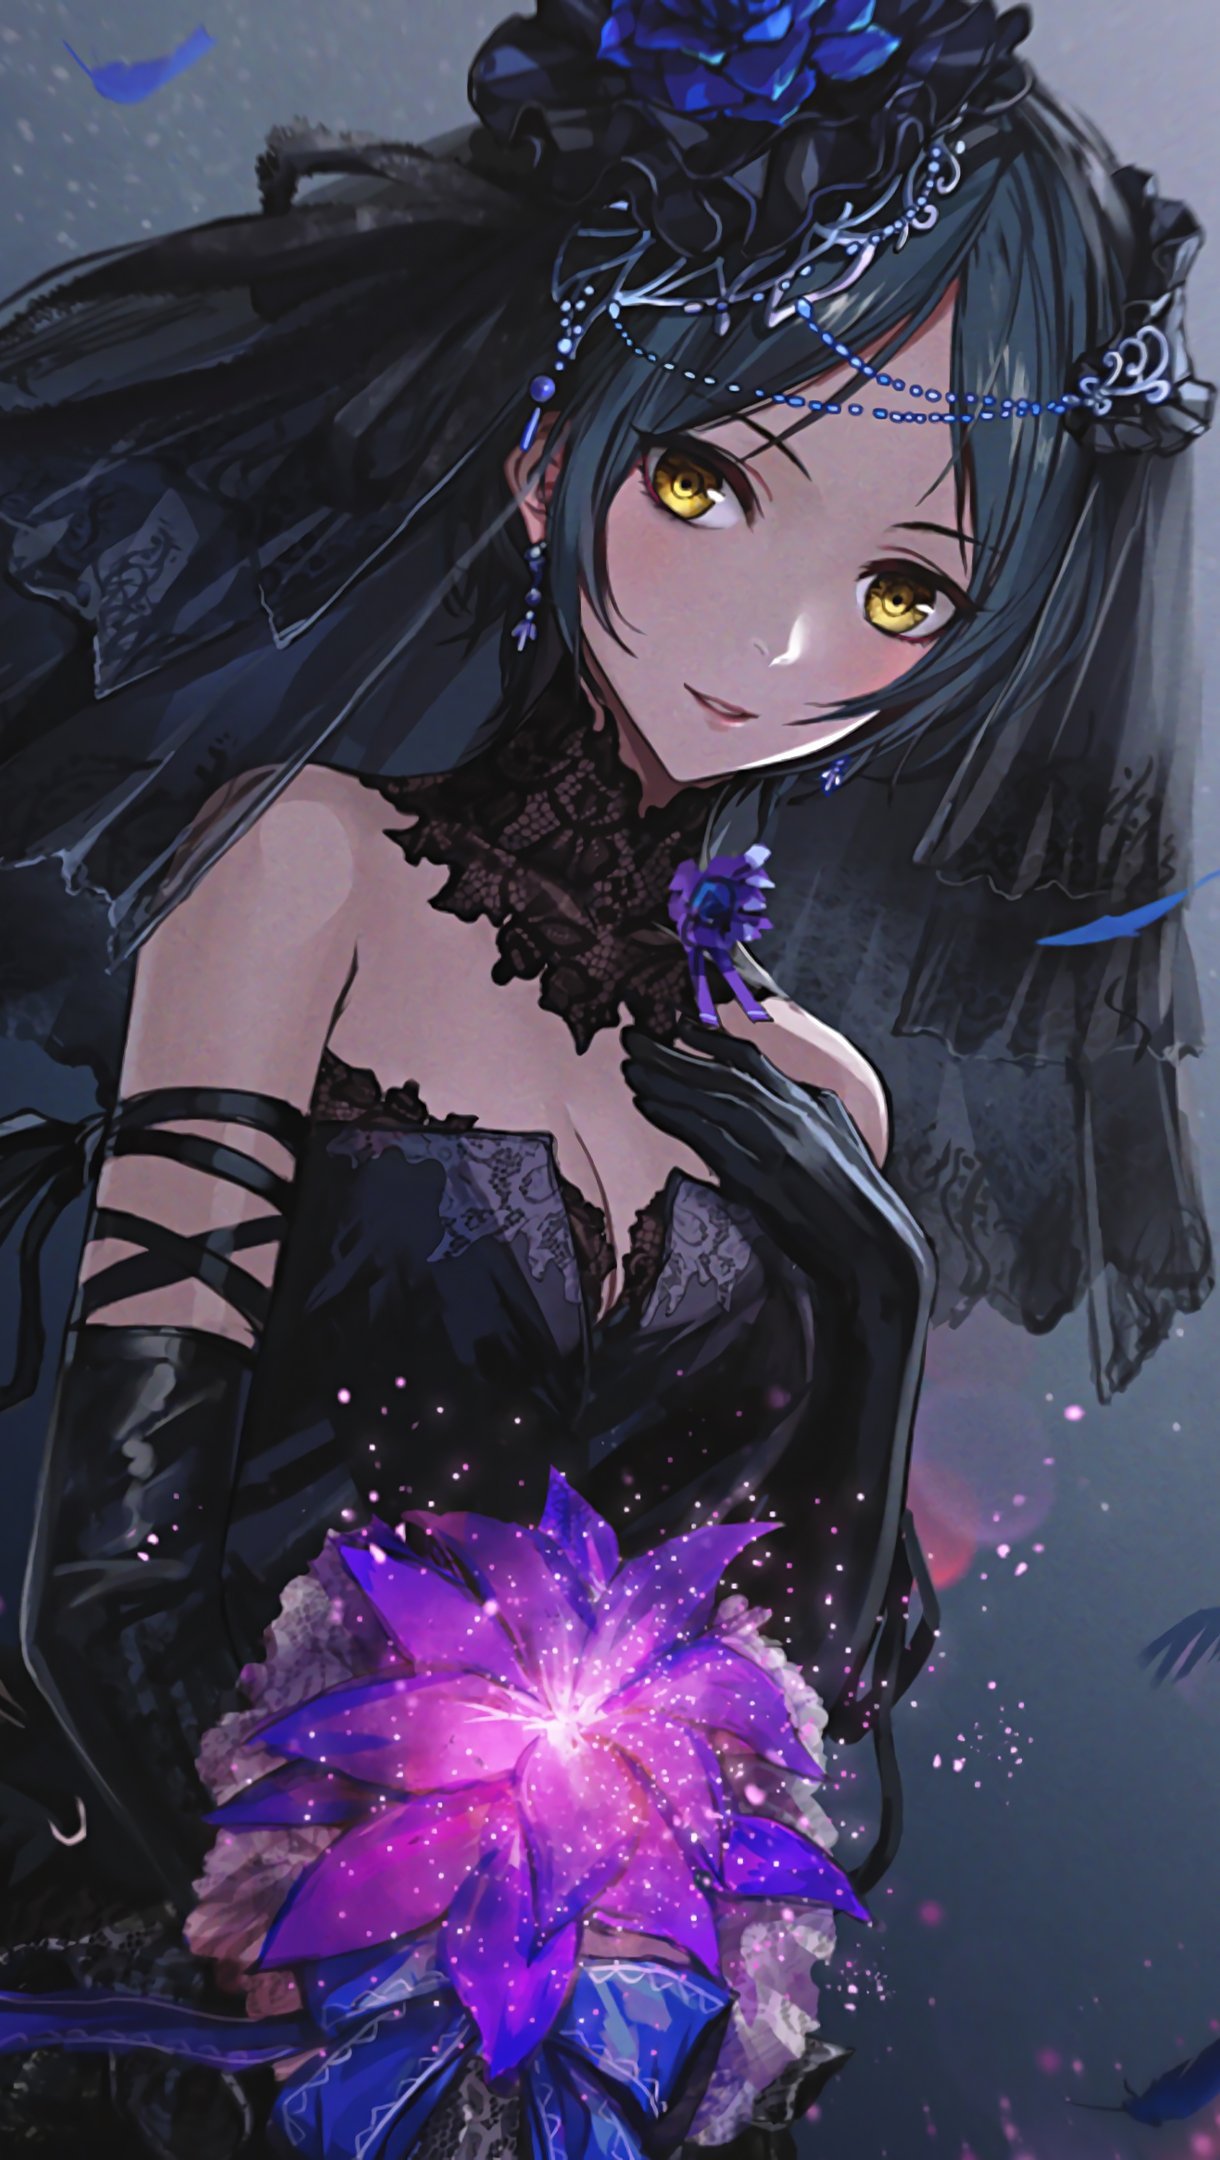 Lexica - Anime girl, Gothic, Vampire, Red eyes, Long hair, Black hair, Black  dress, Sad, Eyebags, Pale, Skull, White veil.